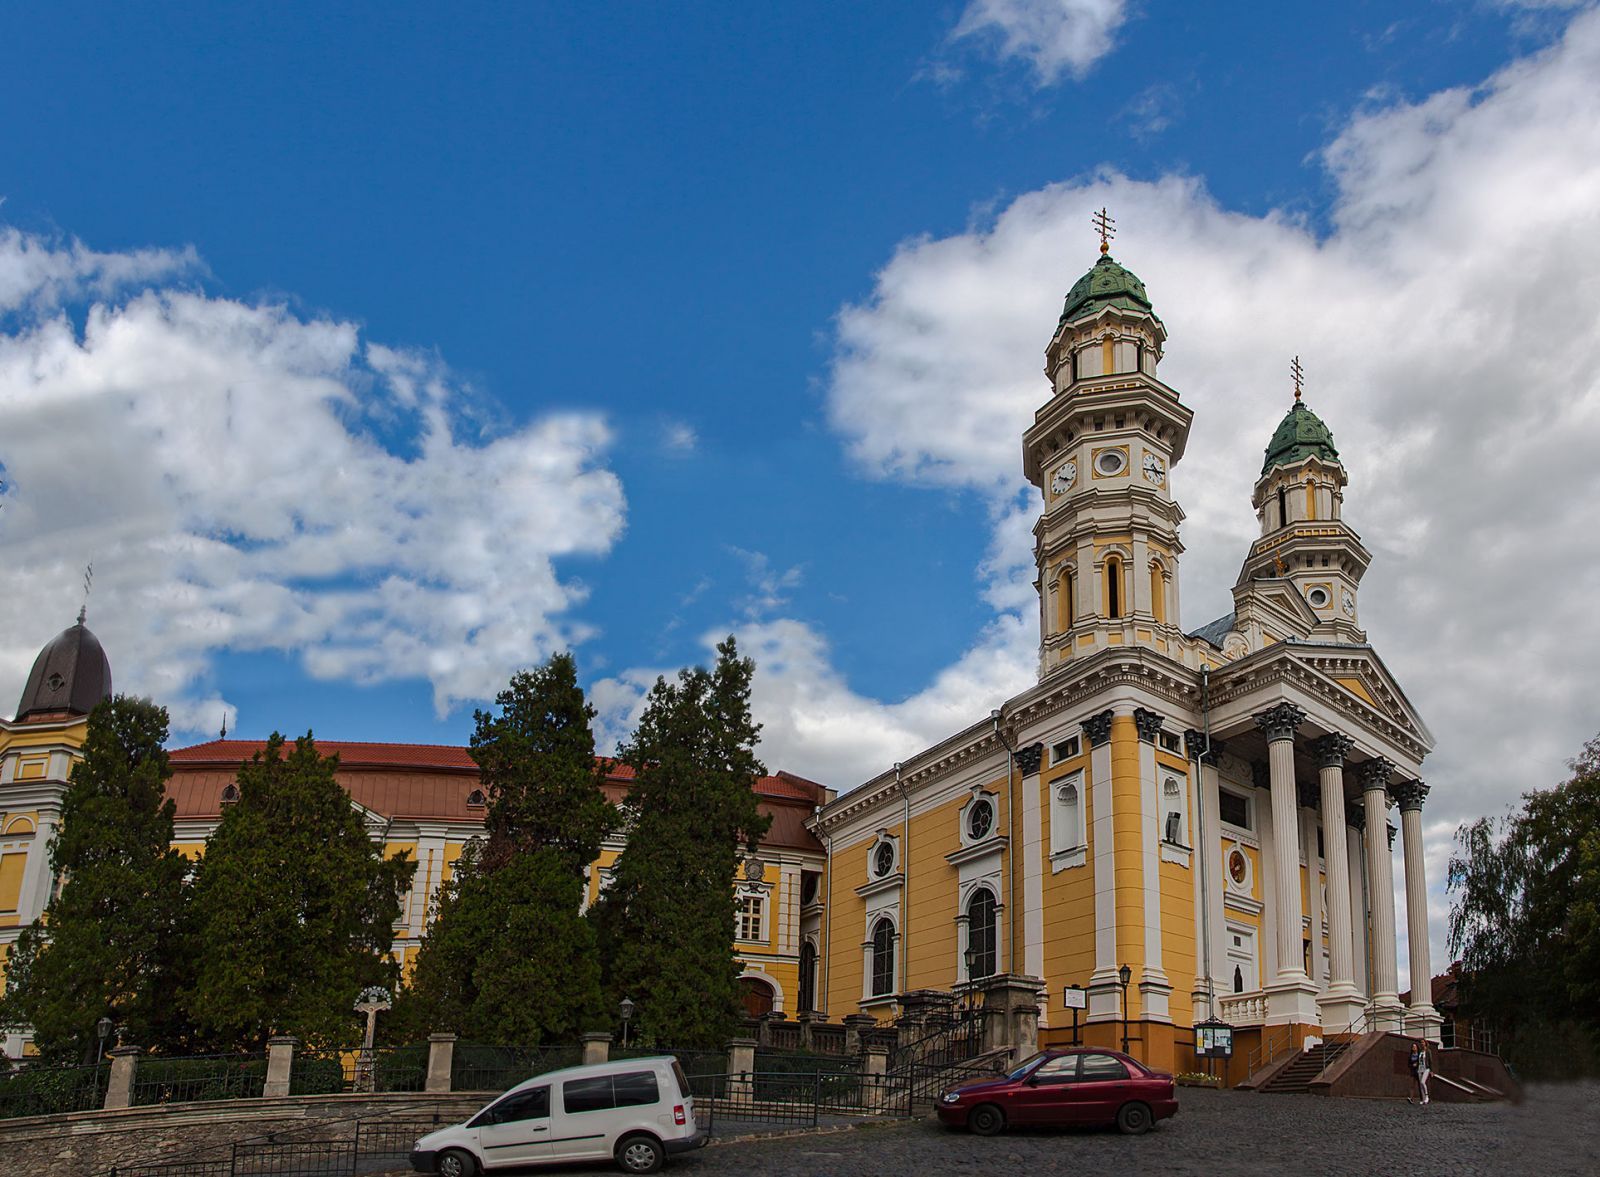 Ужгородський кафедральний собор та колегія сьогодні. Фото: Юрій Крилівець, CC BY-SA 3.0